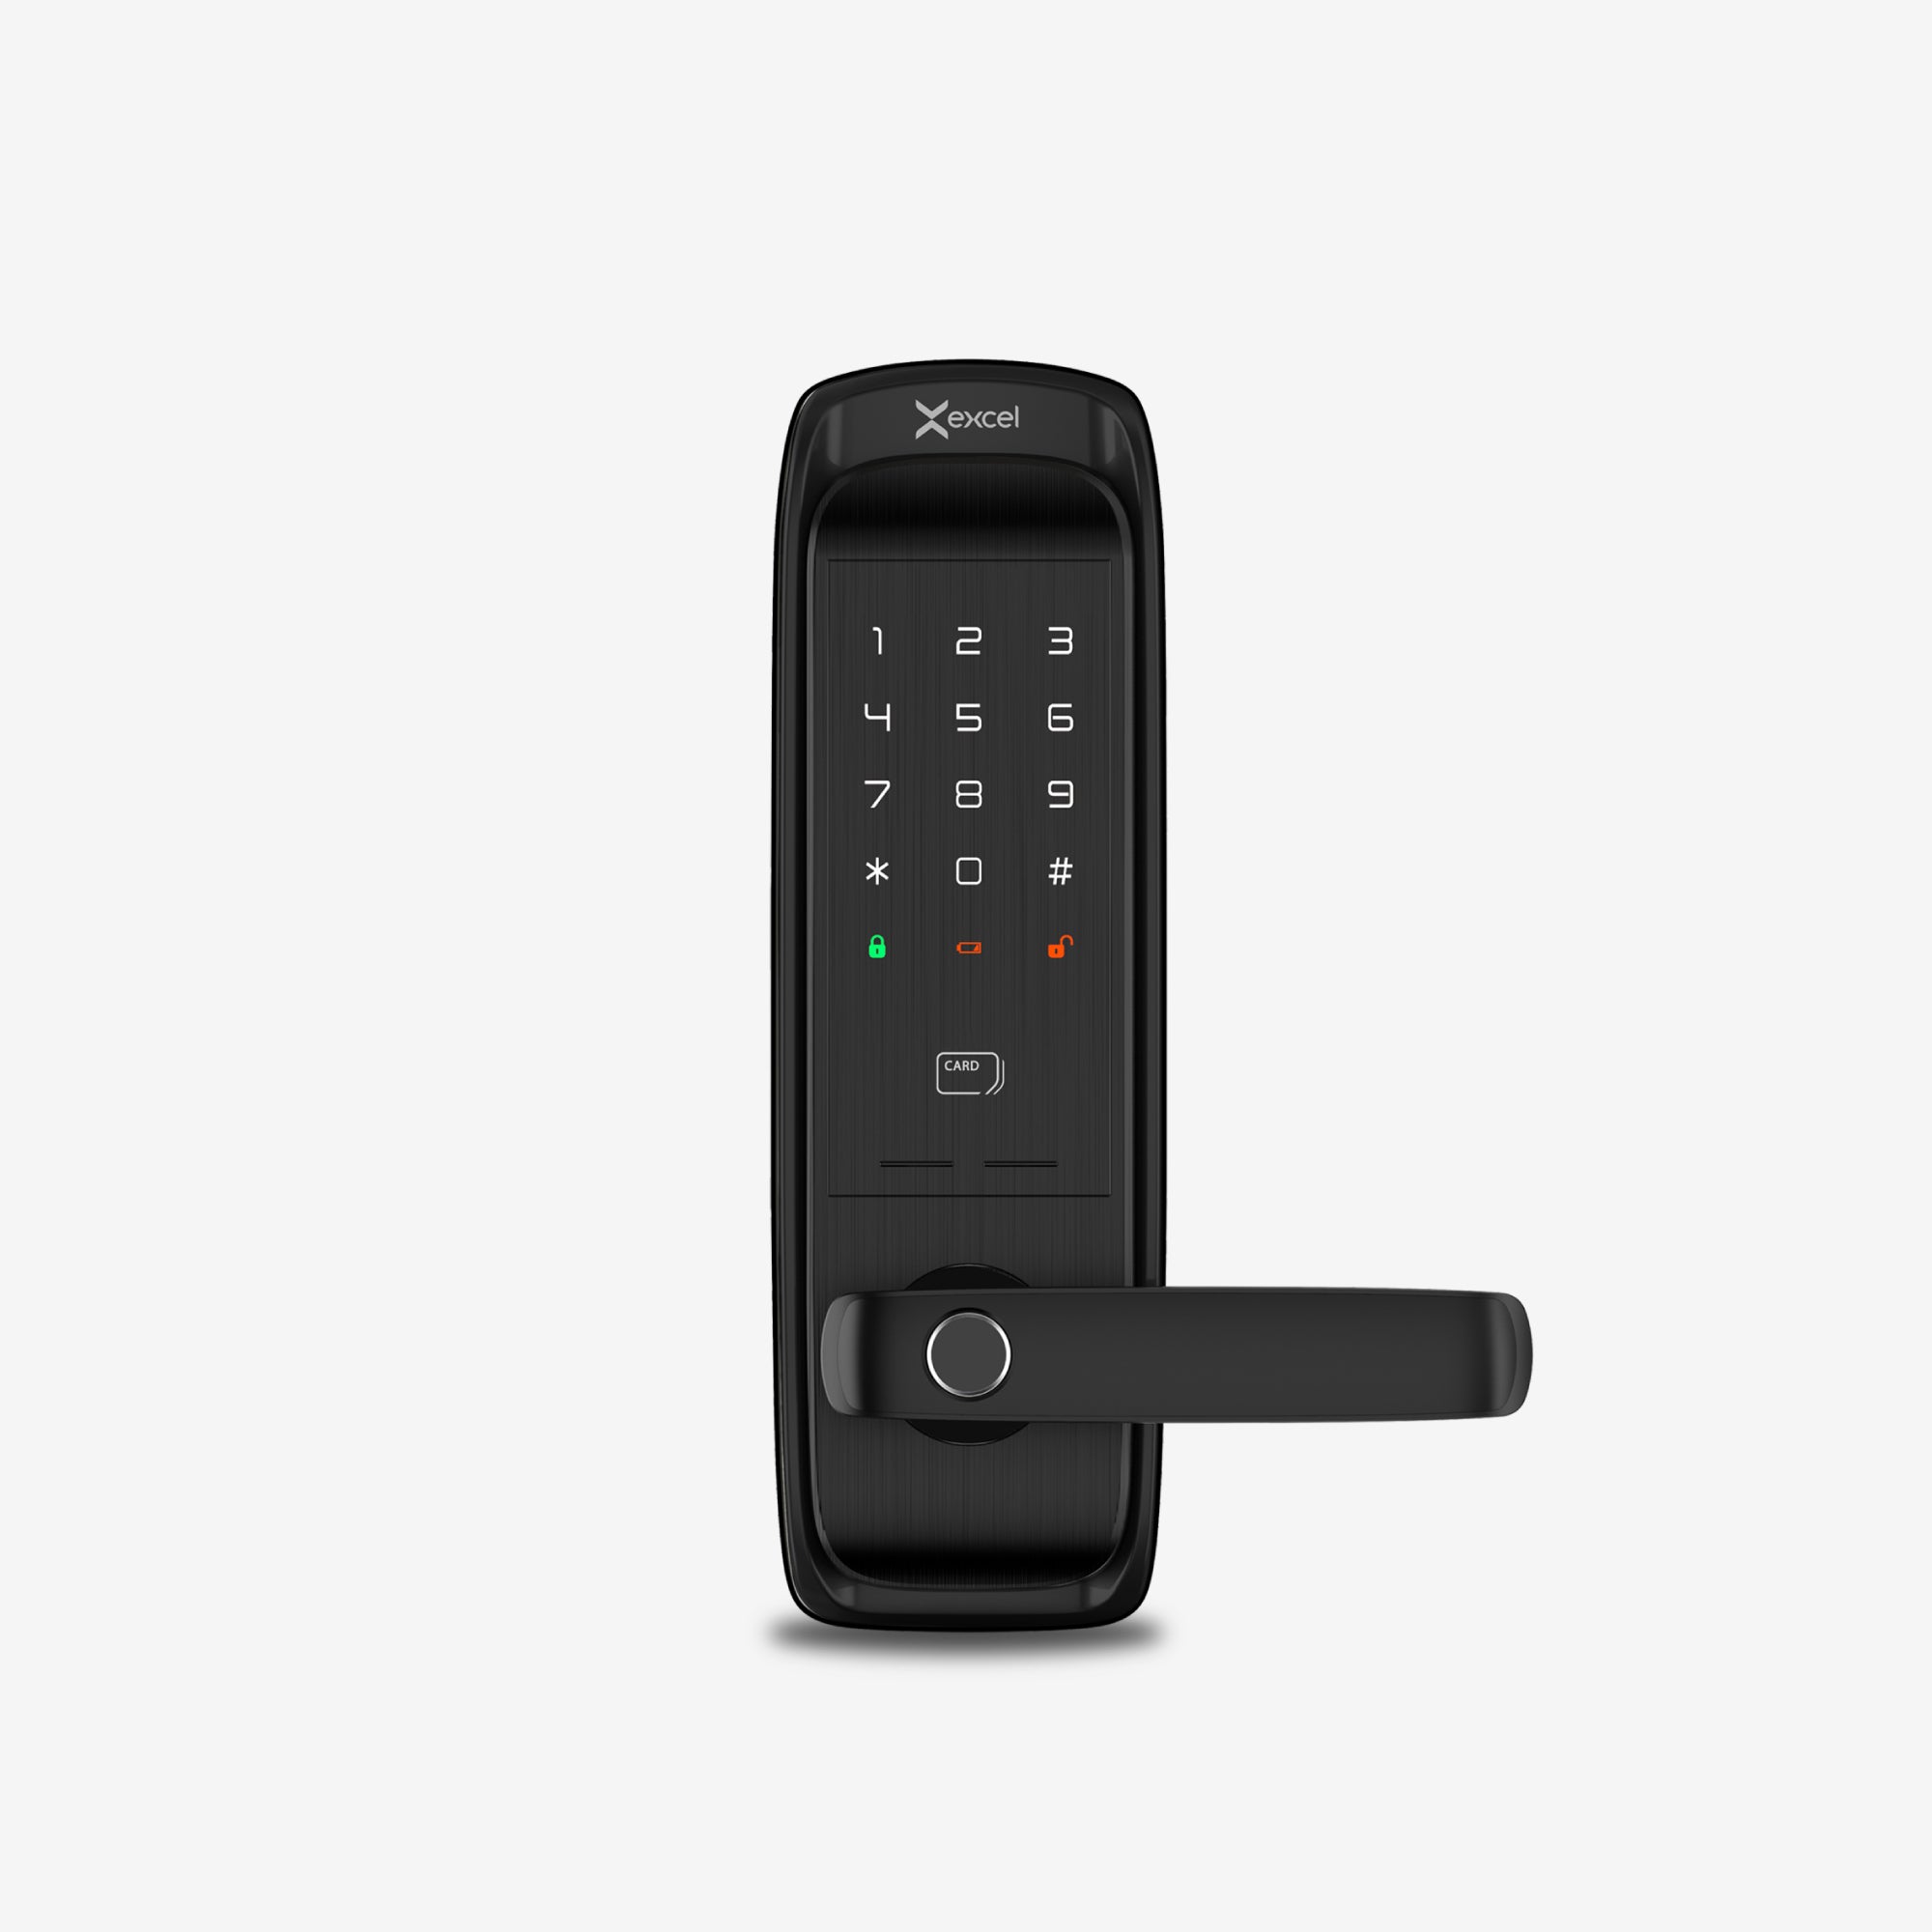 Cerradura Inteligente EXC-SL500. Conectividad WiFi y Bluetooth, lector de huella digital, Contraseña Numérica y Tarjeta RFID. Teclado numérico iluminado. Módulo exterior, vista frontal.